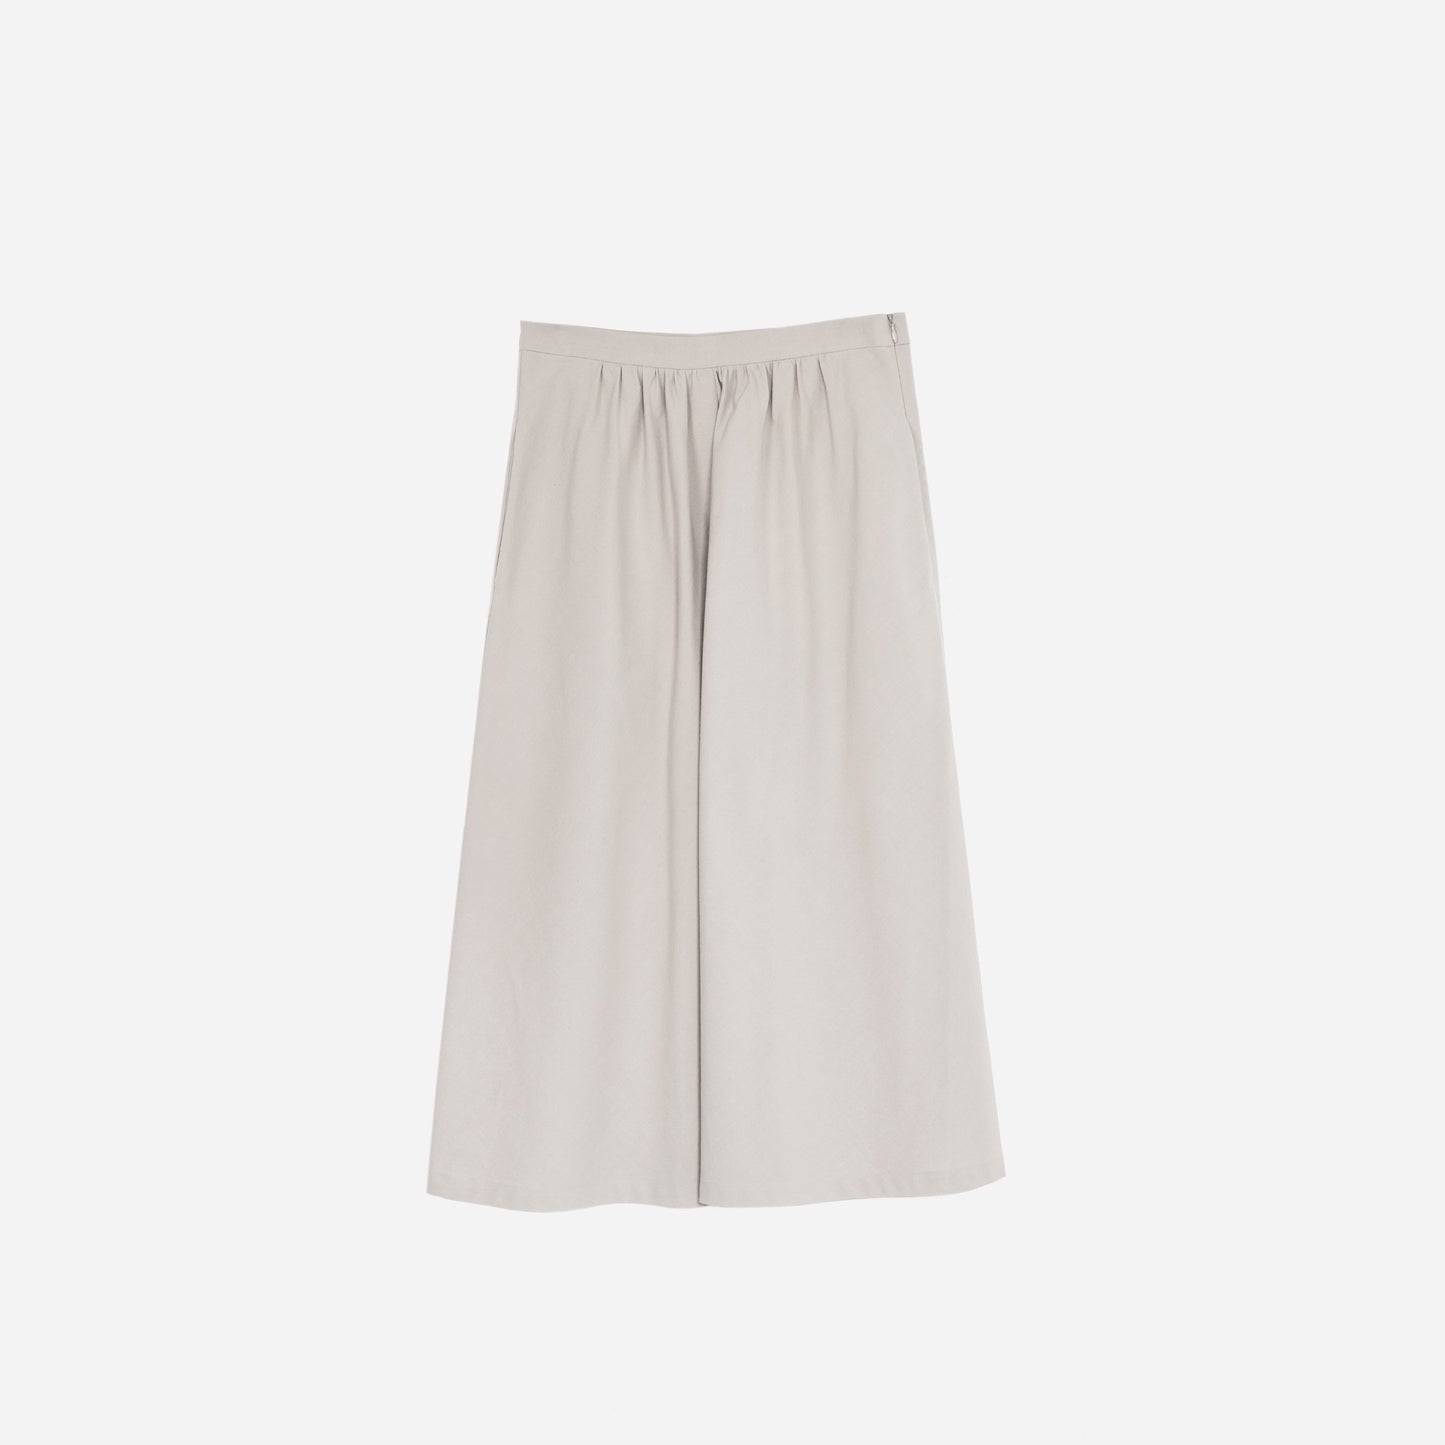 Light grey skirt